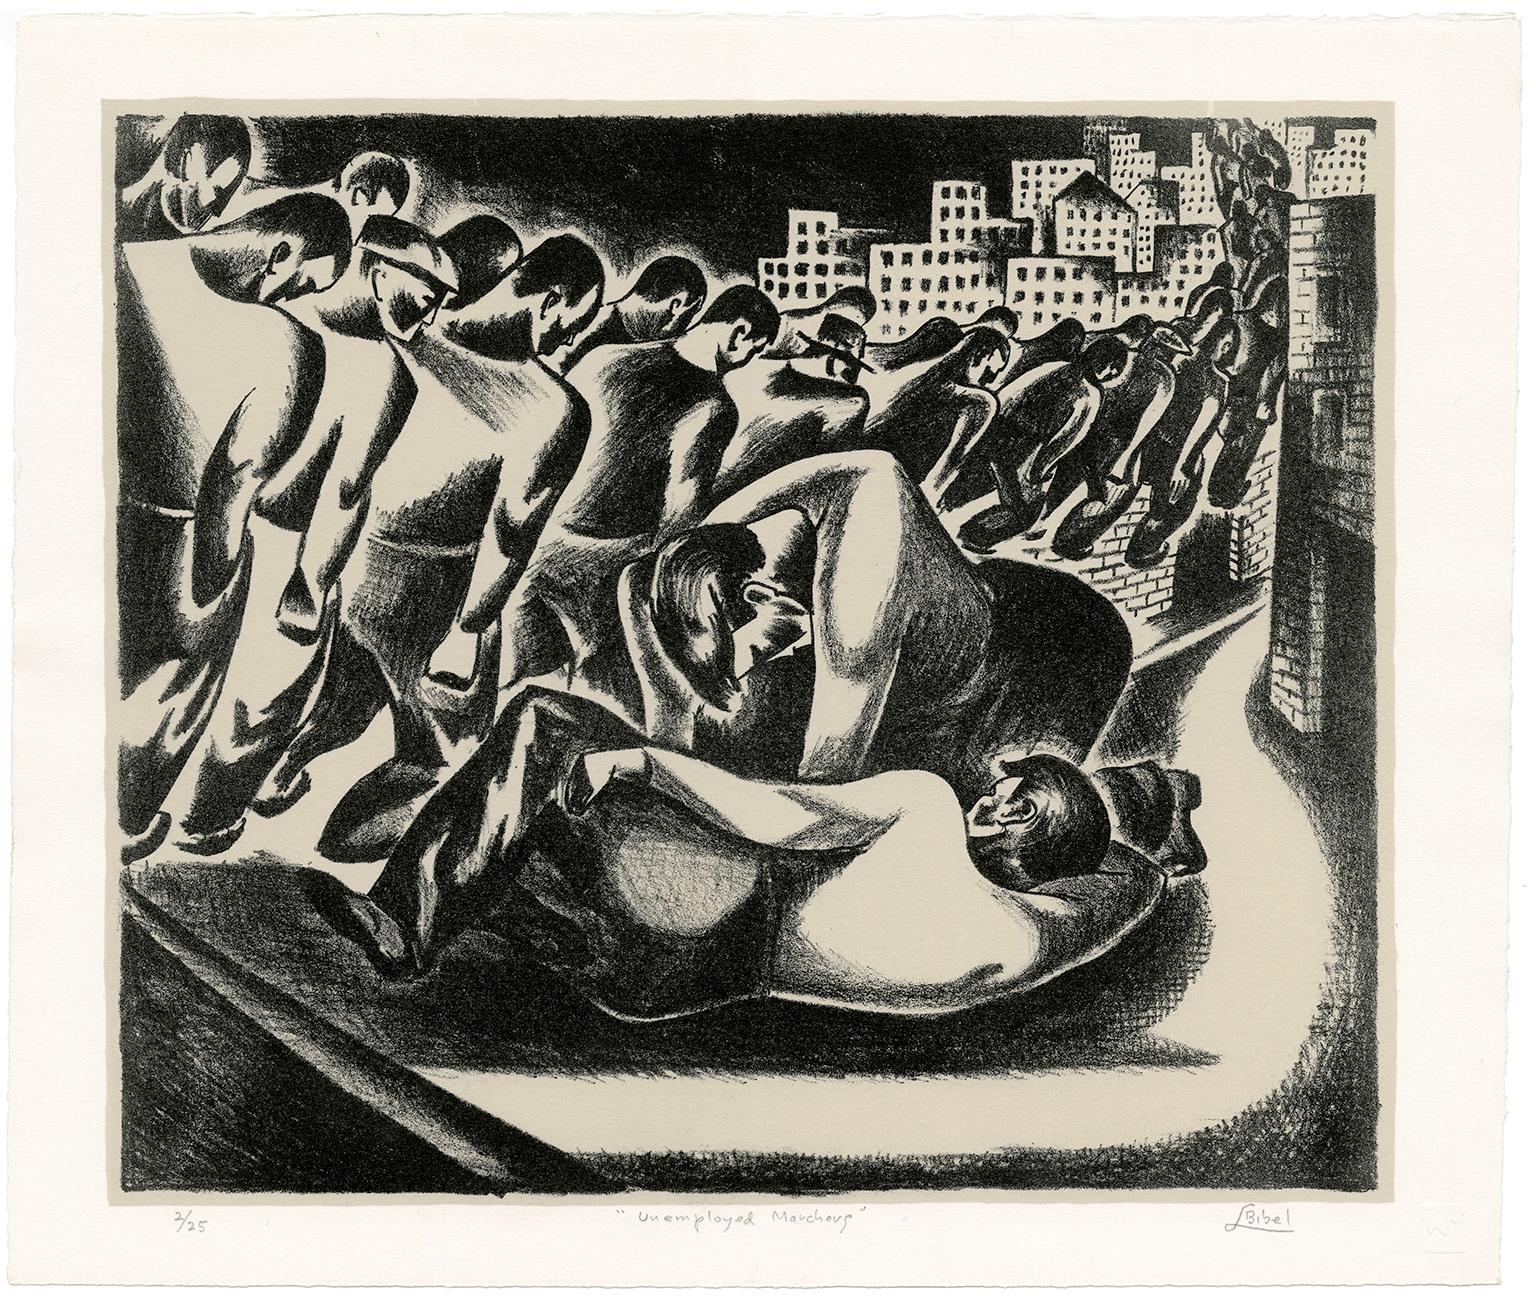 Arbeitslose Demonstranten - Modernität der 1930er Jahre, WPA – Print von Leon Bibel